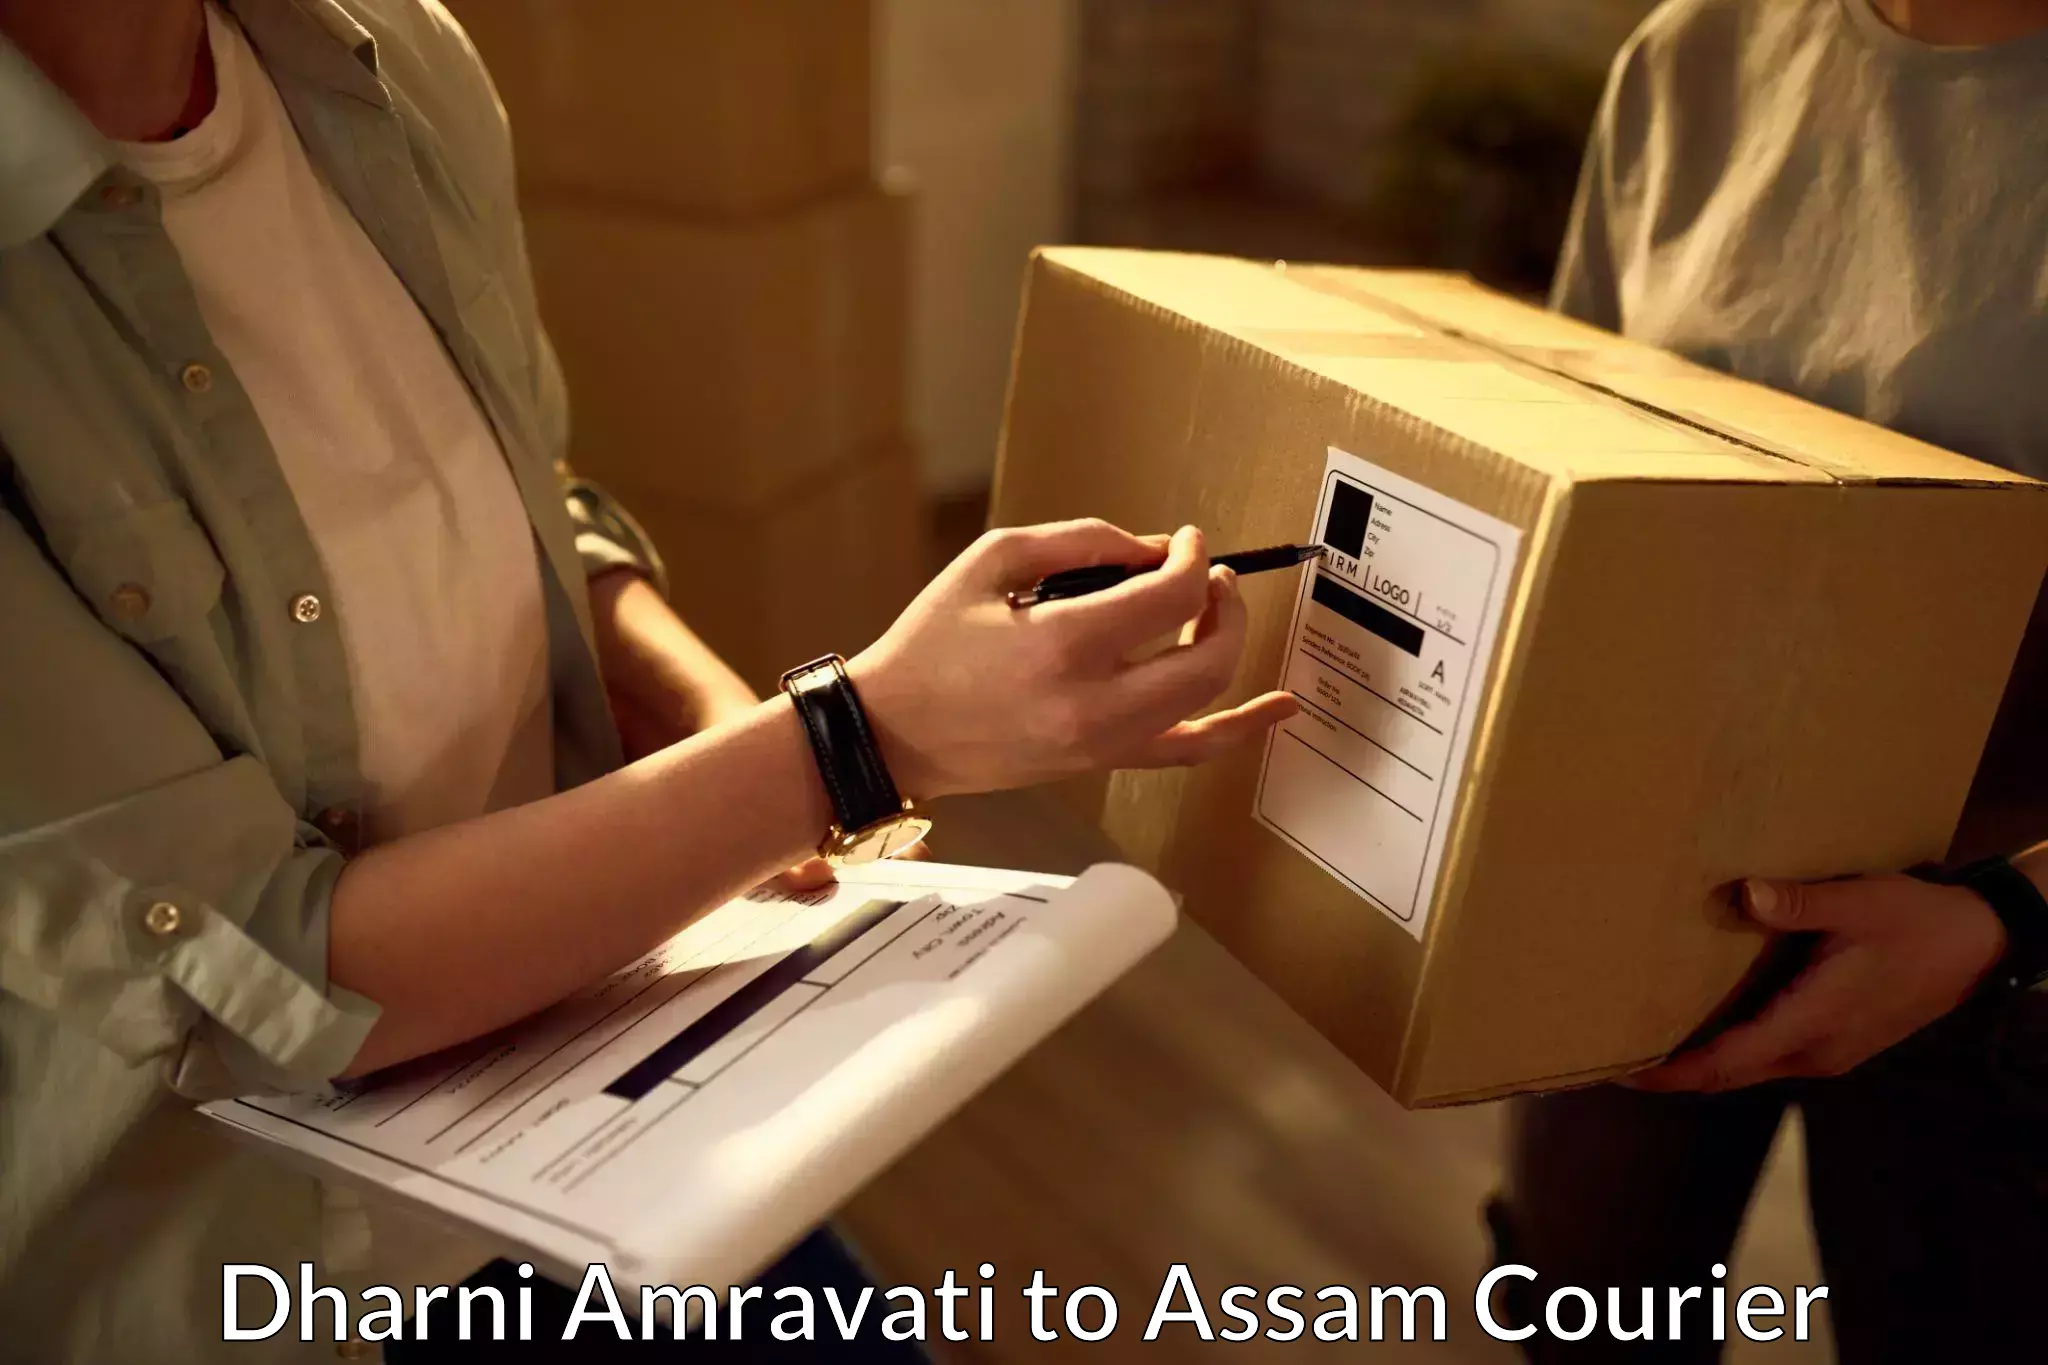 Professional parcel services Dharni Amravati to Dhekiajuli